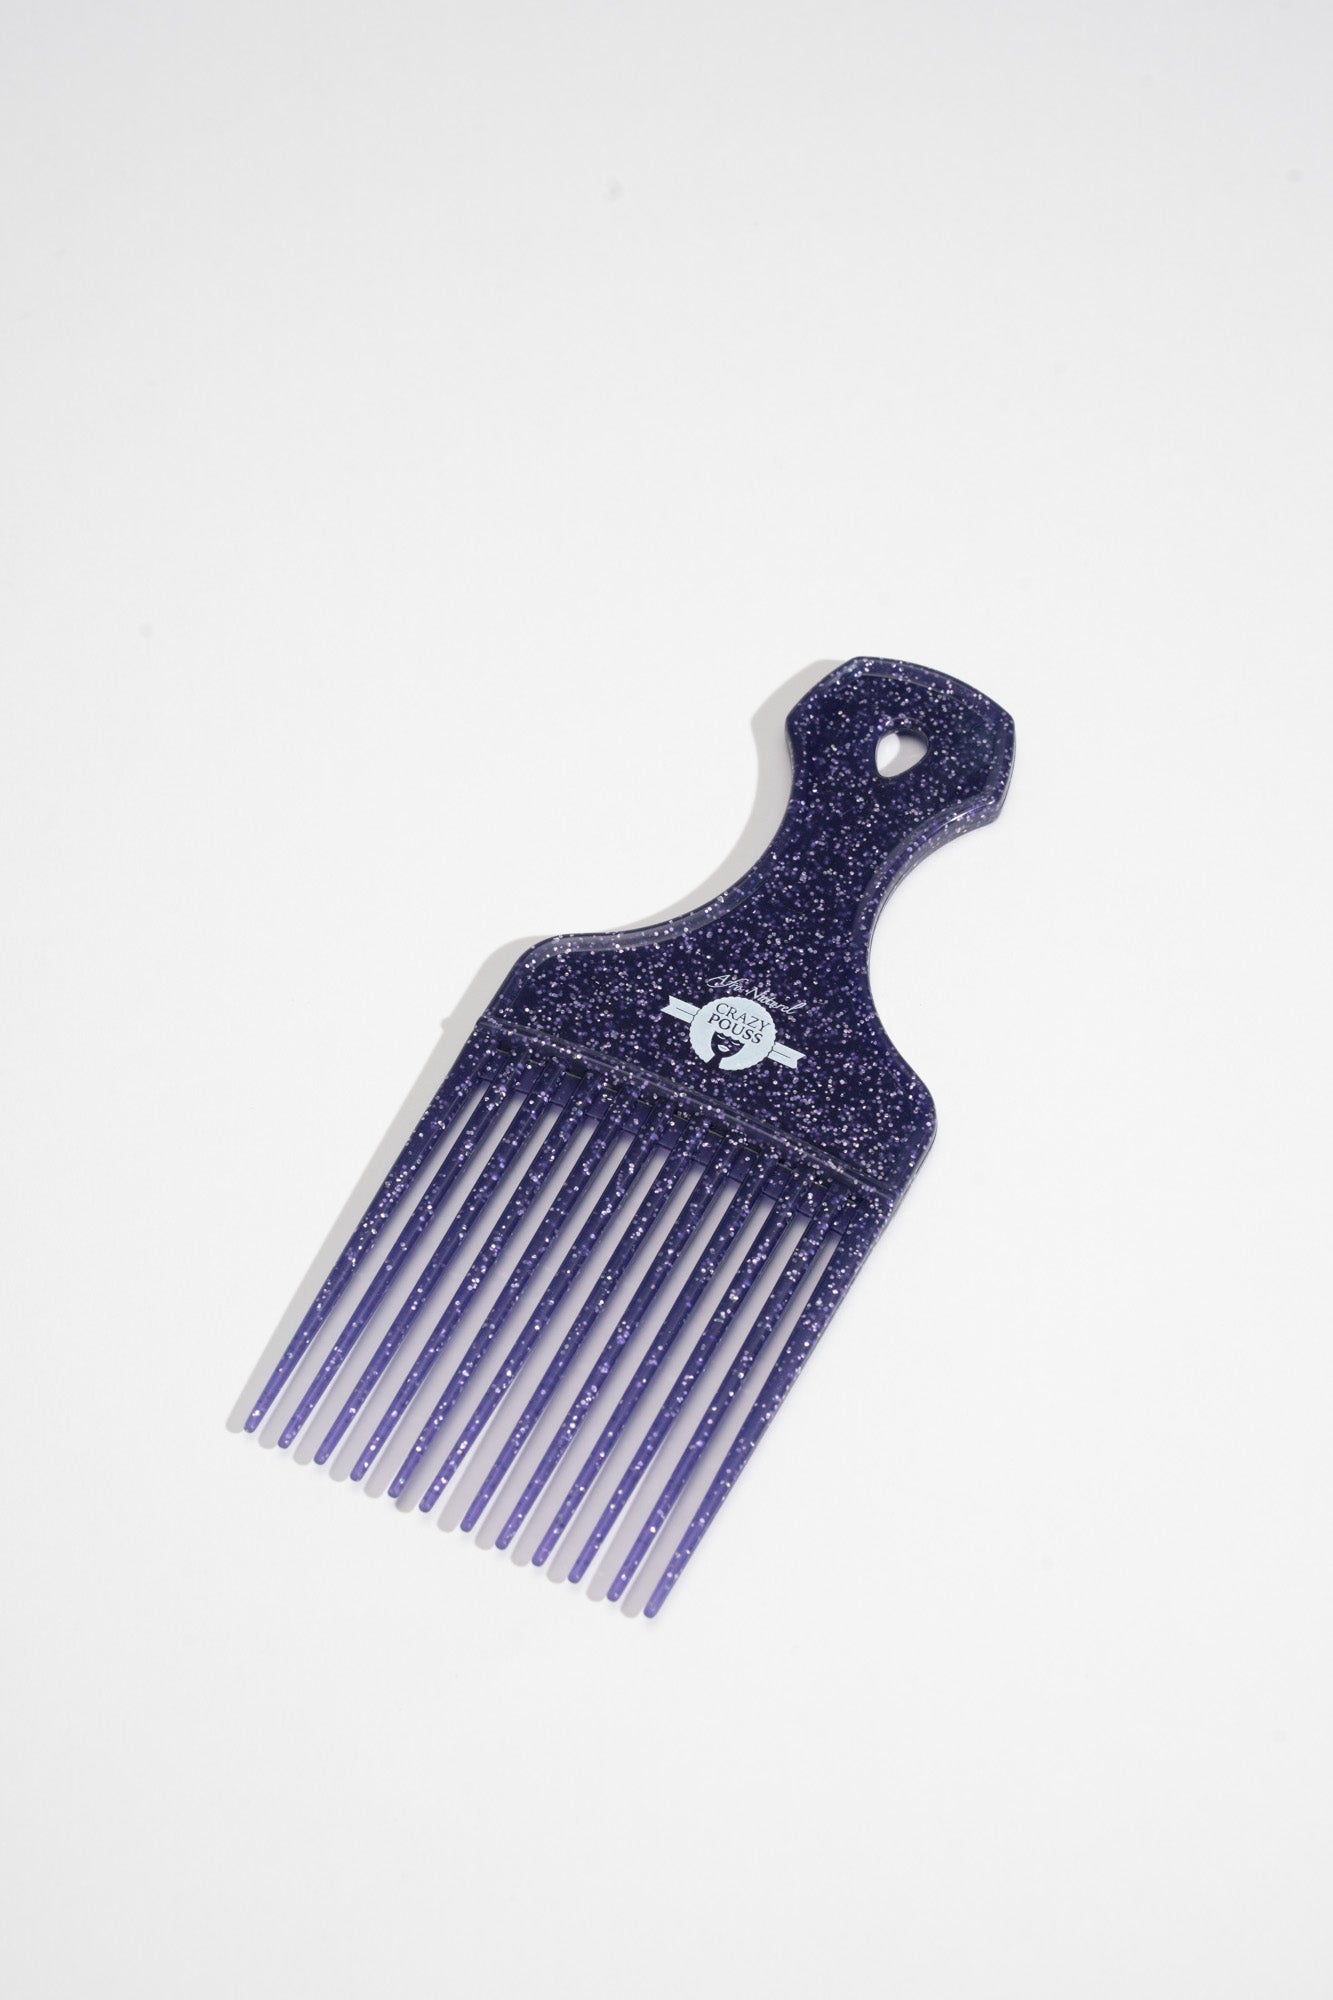 CRAZY POUSS - Peigne afro violet - 4 modèles de 2 couleurs - Accessoire pour démêler facilement vos cheveux épais, bouclés, crépus